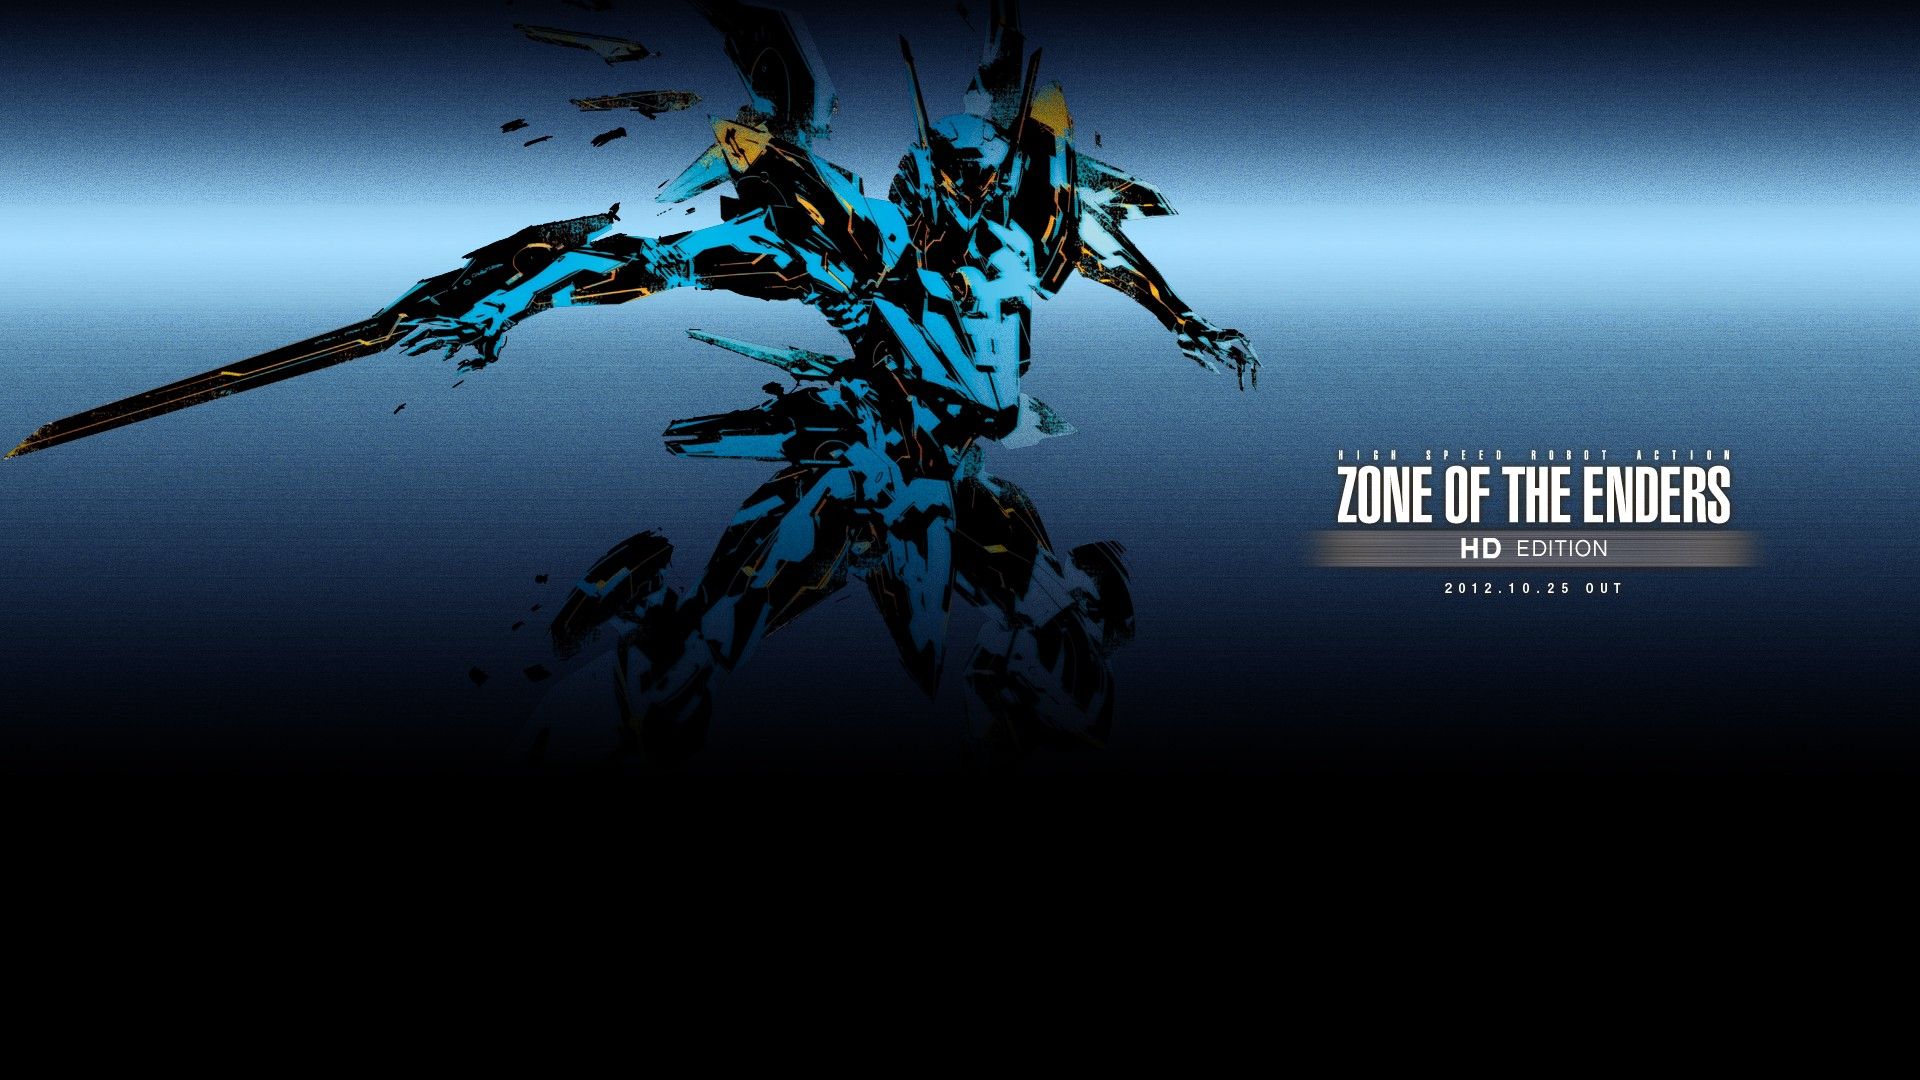 Zone The Enders Wallpaper, Zone The Enders Wallpaper